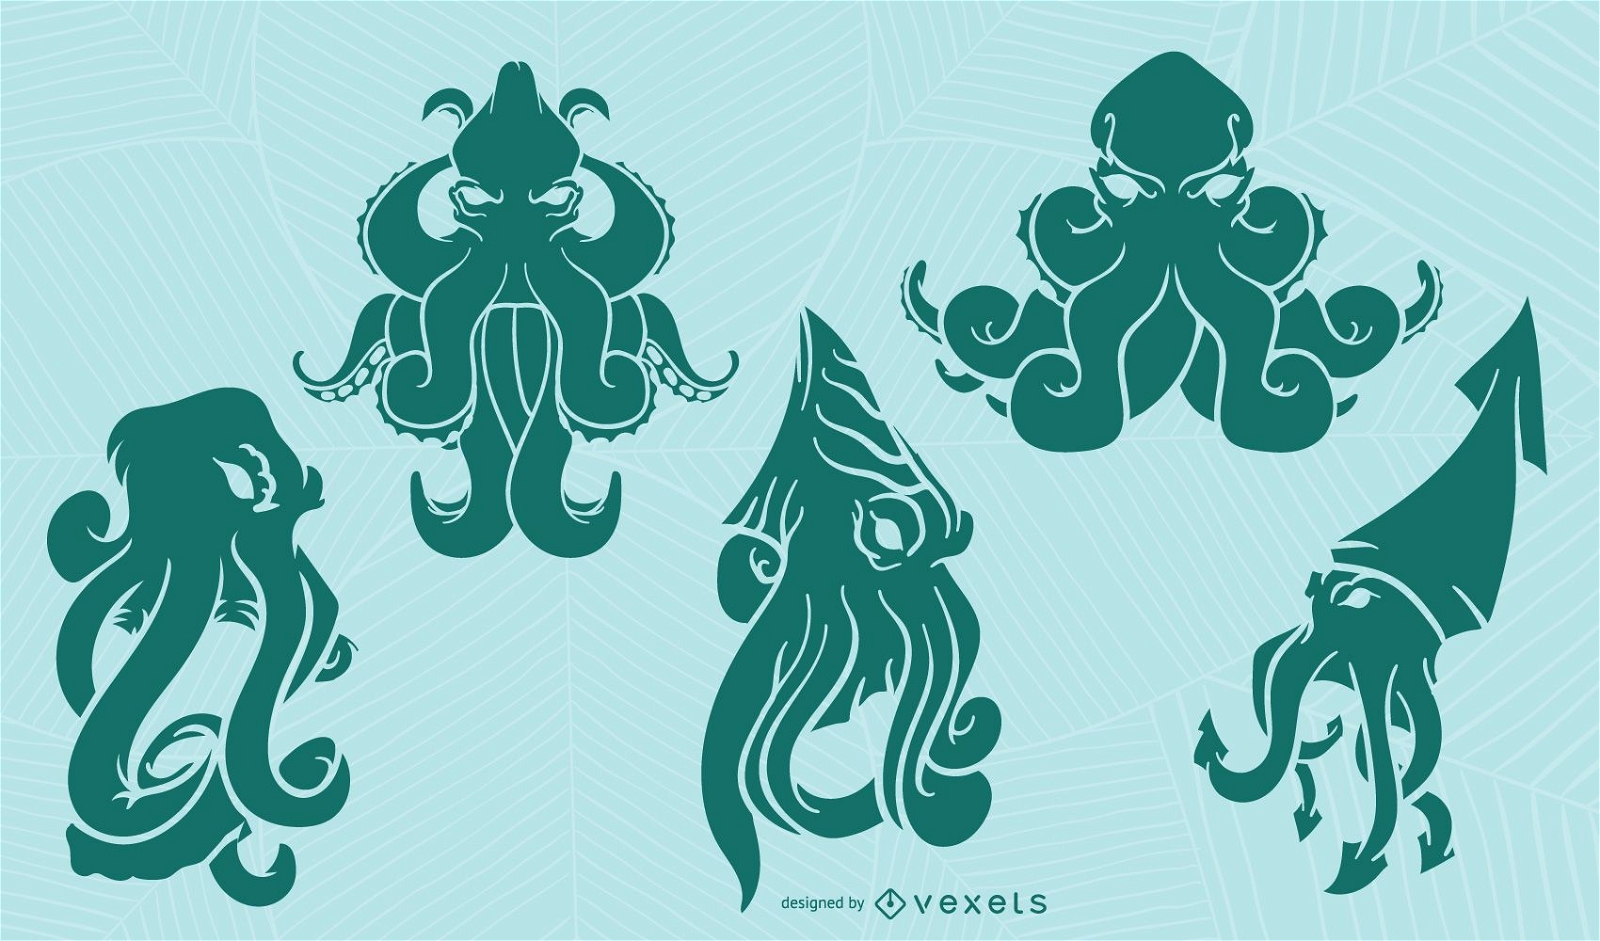 Kraken silhouette set